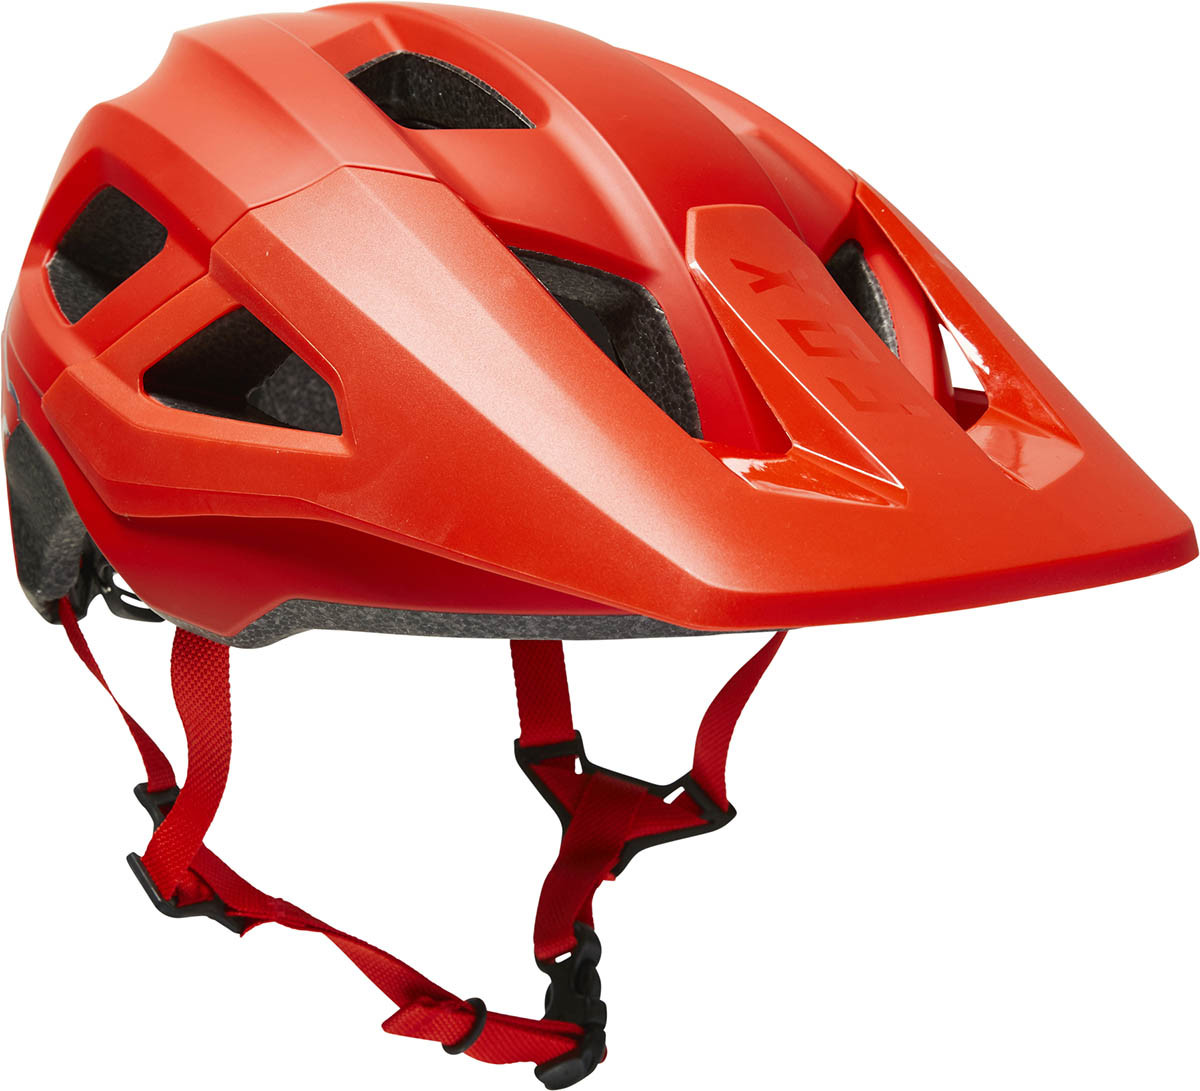 Fox Yth Mainframe Helmet, Ce - Fluo Red